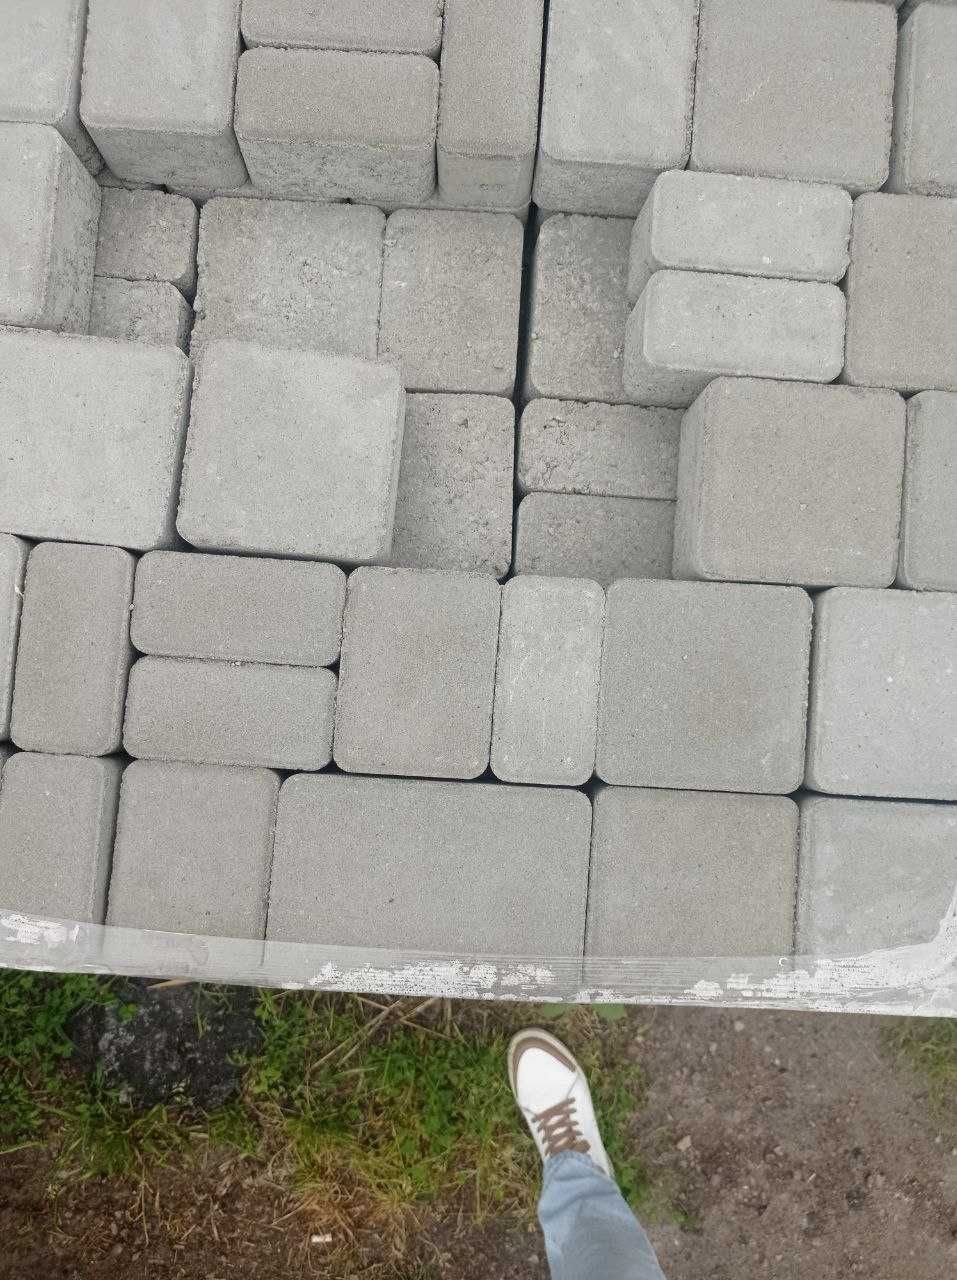 Тротуарная плитка, бруківка зі знижкою  
ЦІНА 200 грн, від виробника